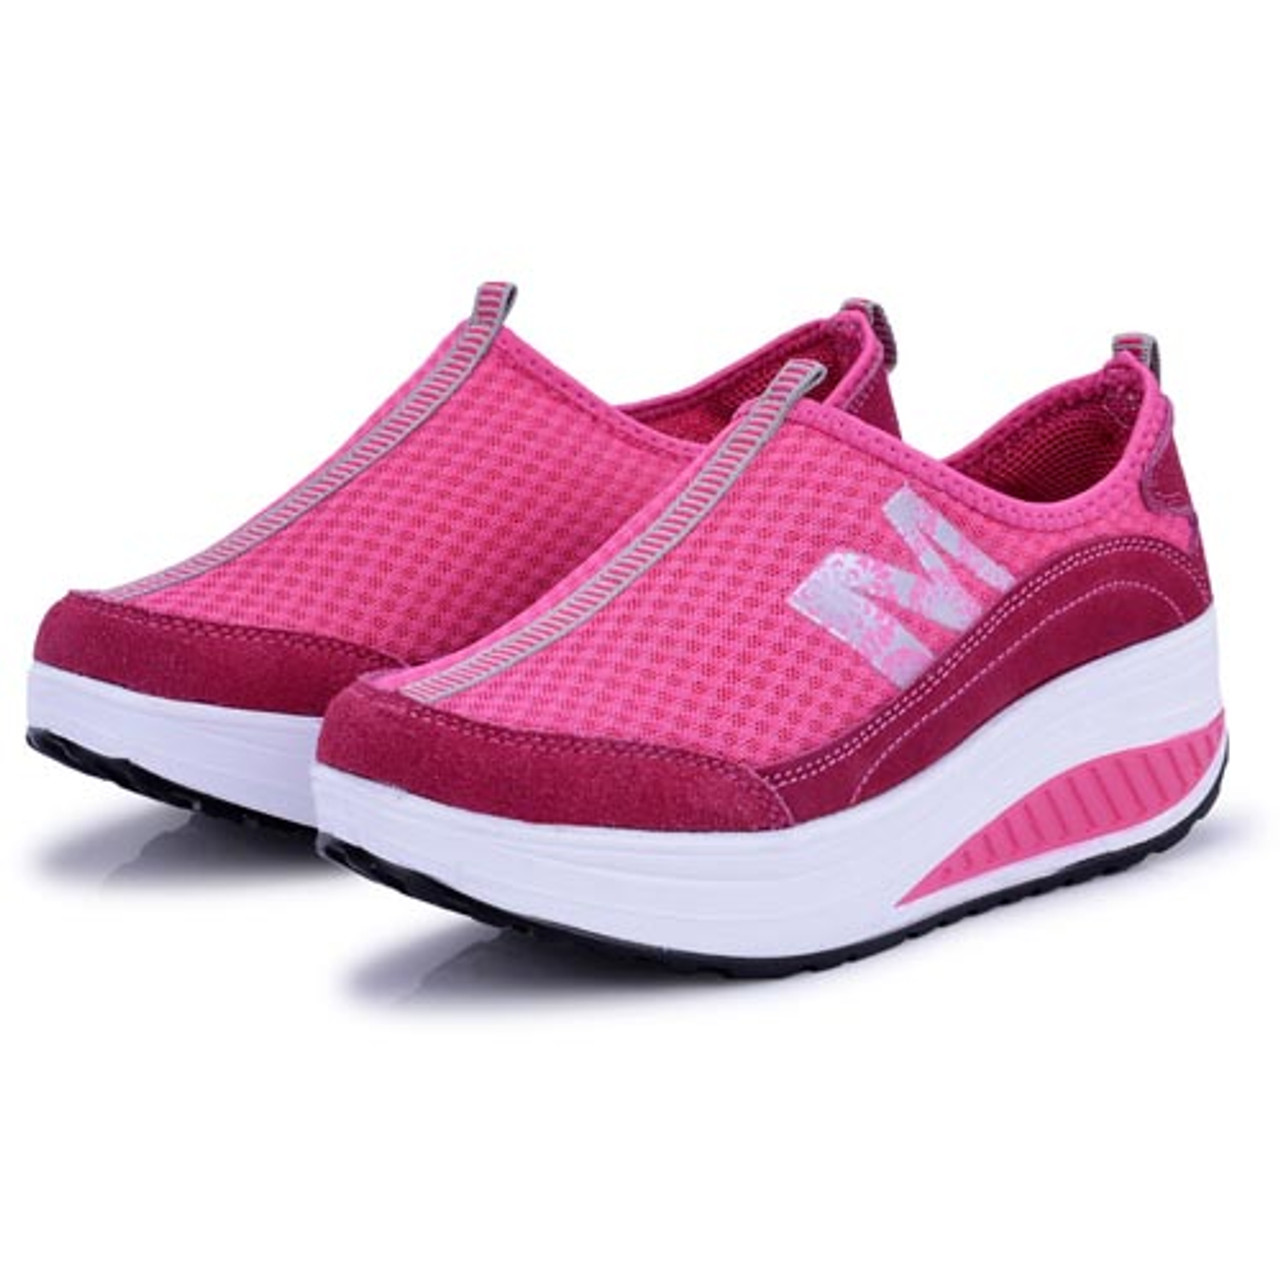 M letter pattern pink leather rocker bottom shoe sneaker | Womens ...